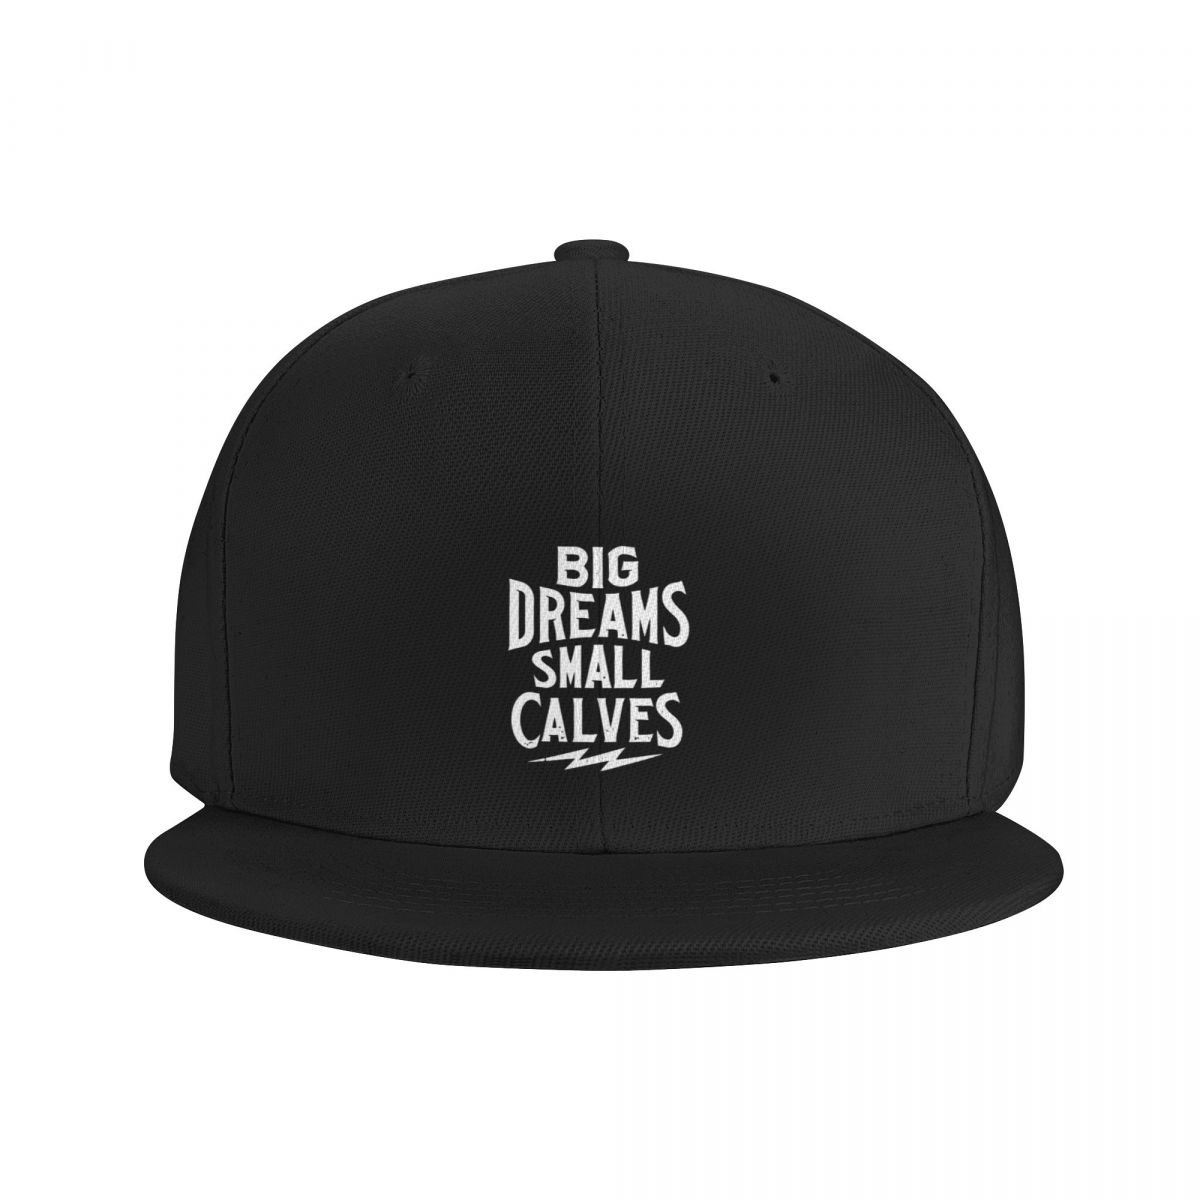 chris-bumstead-hats-caps-big-dreams-small-calves-hiphop-cap